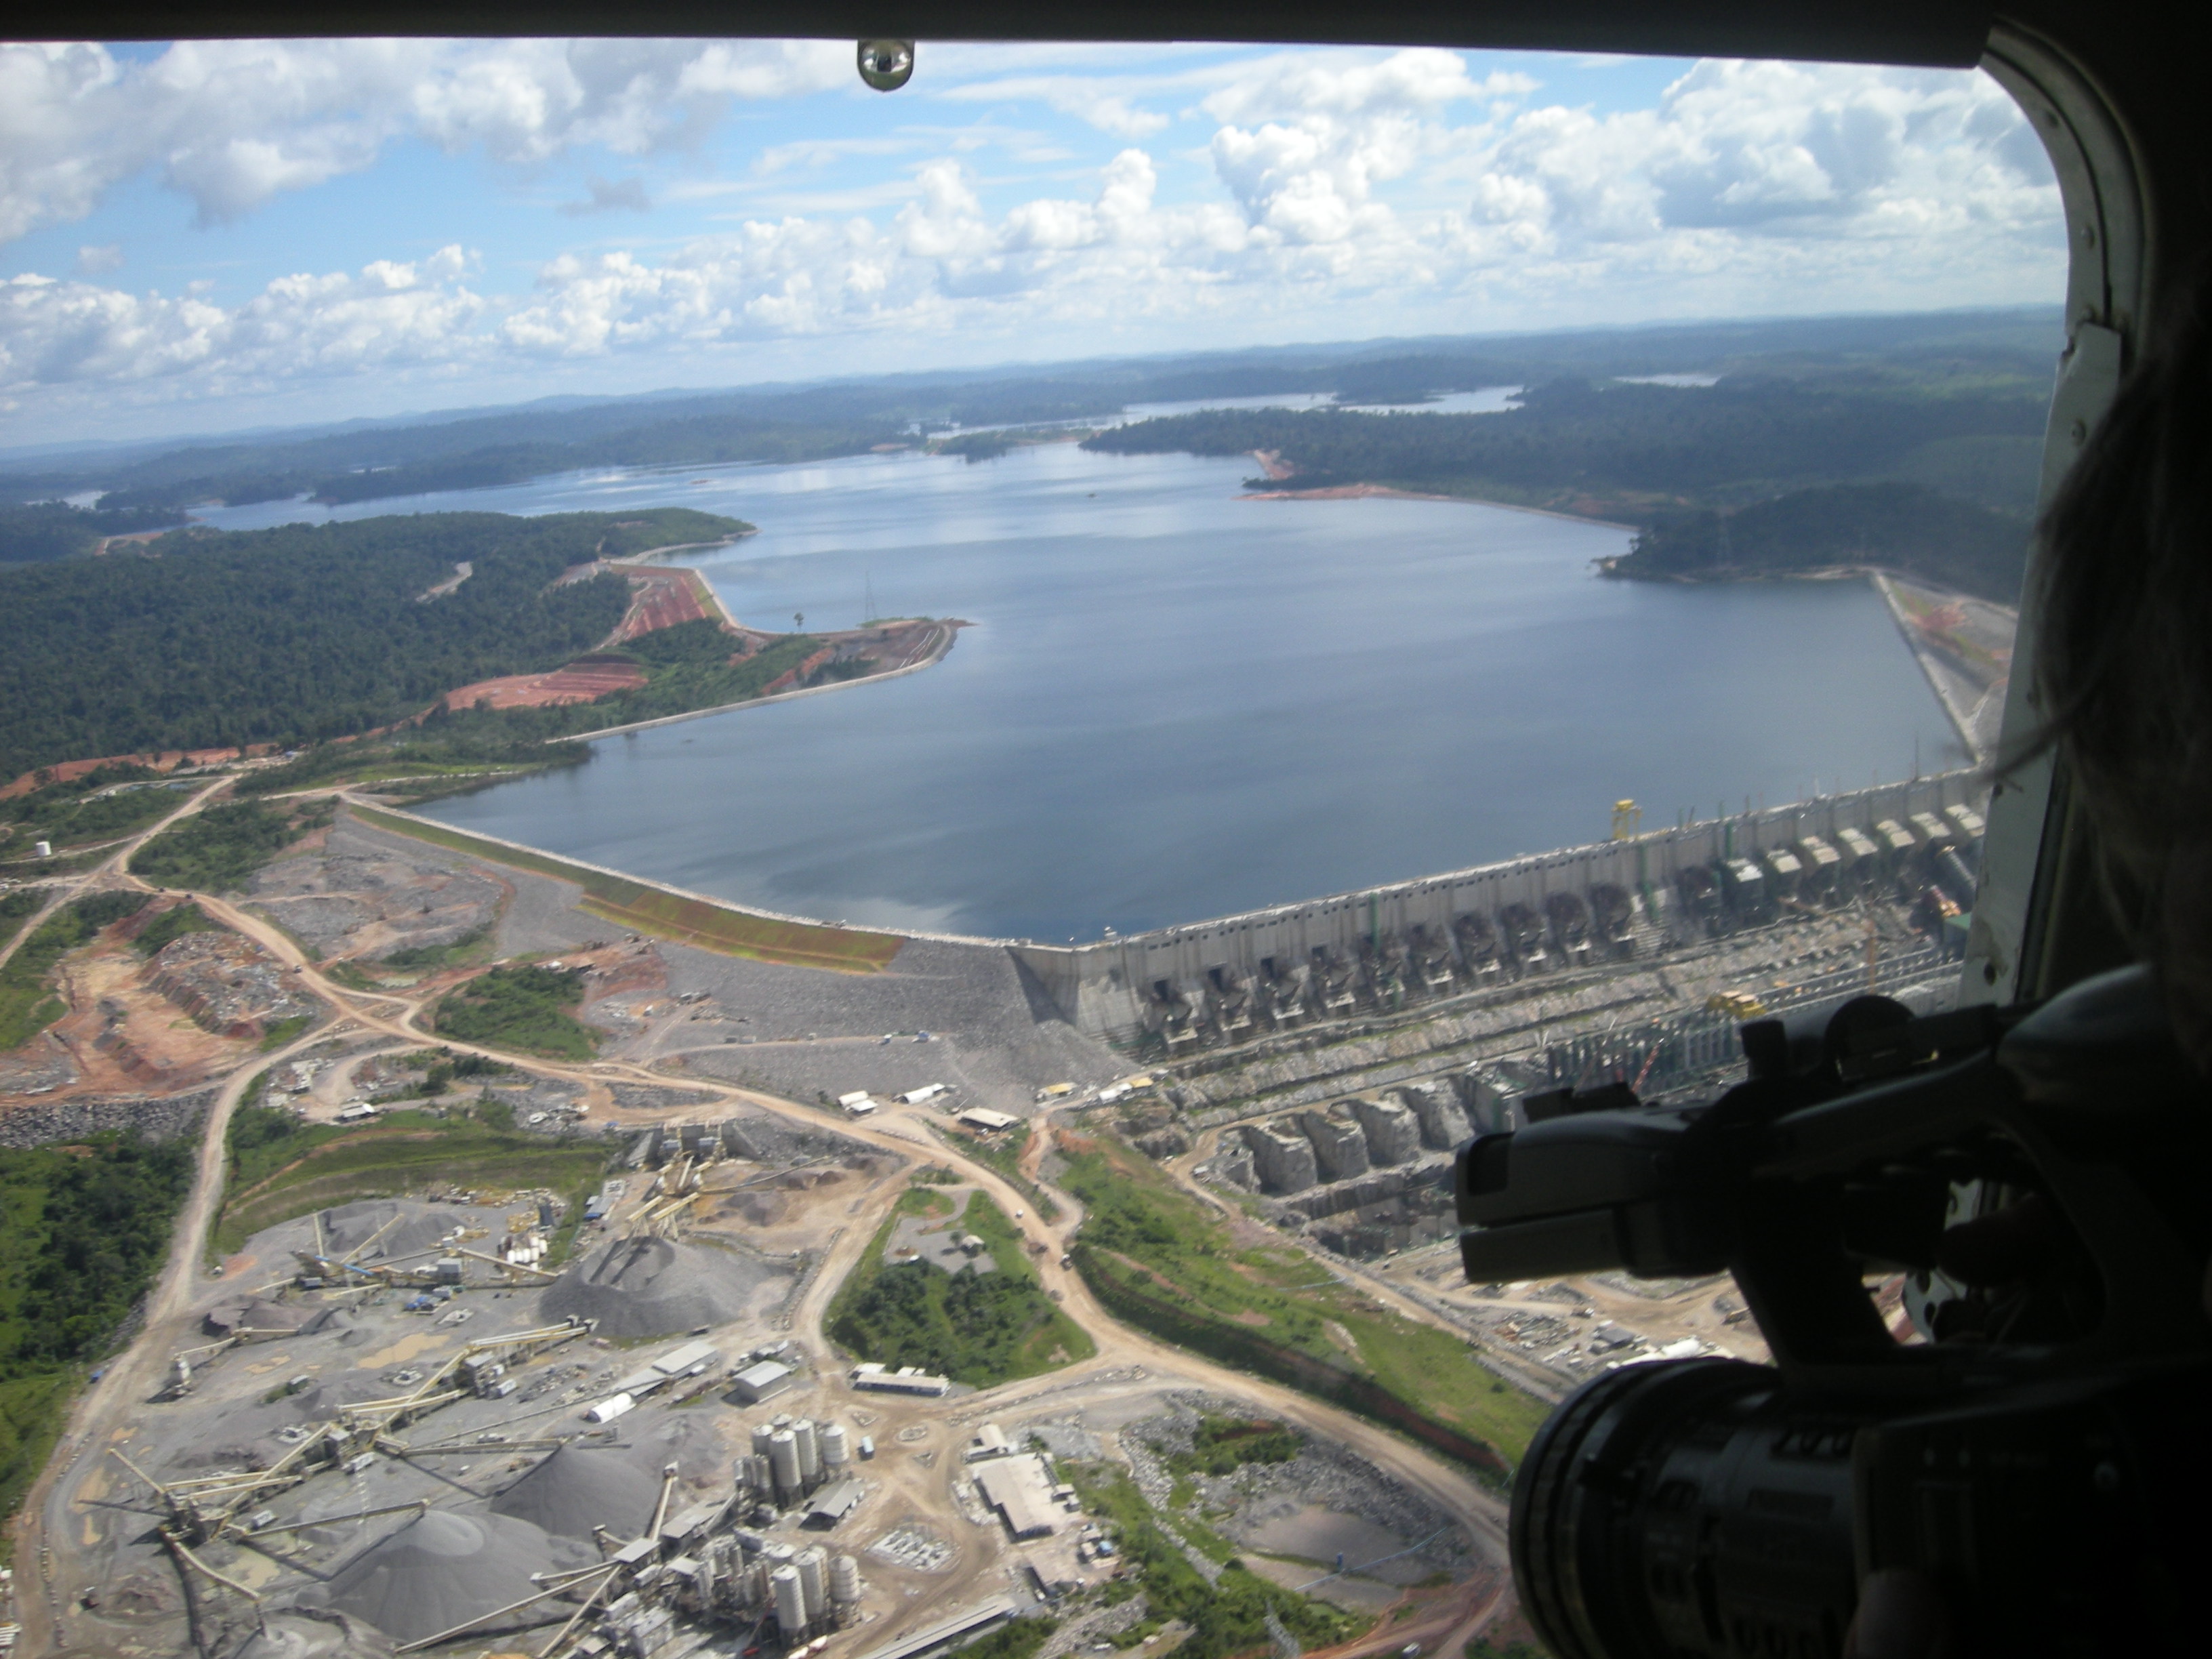 Der Stausee des gigantischen Kraftwerks in Belo Monte bedeckt eine Fläche so groß wie der Bodensee. Die Planung und der Bau wurden jahrzehntelang von Protesten begleitet